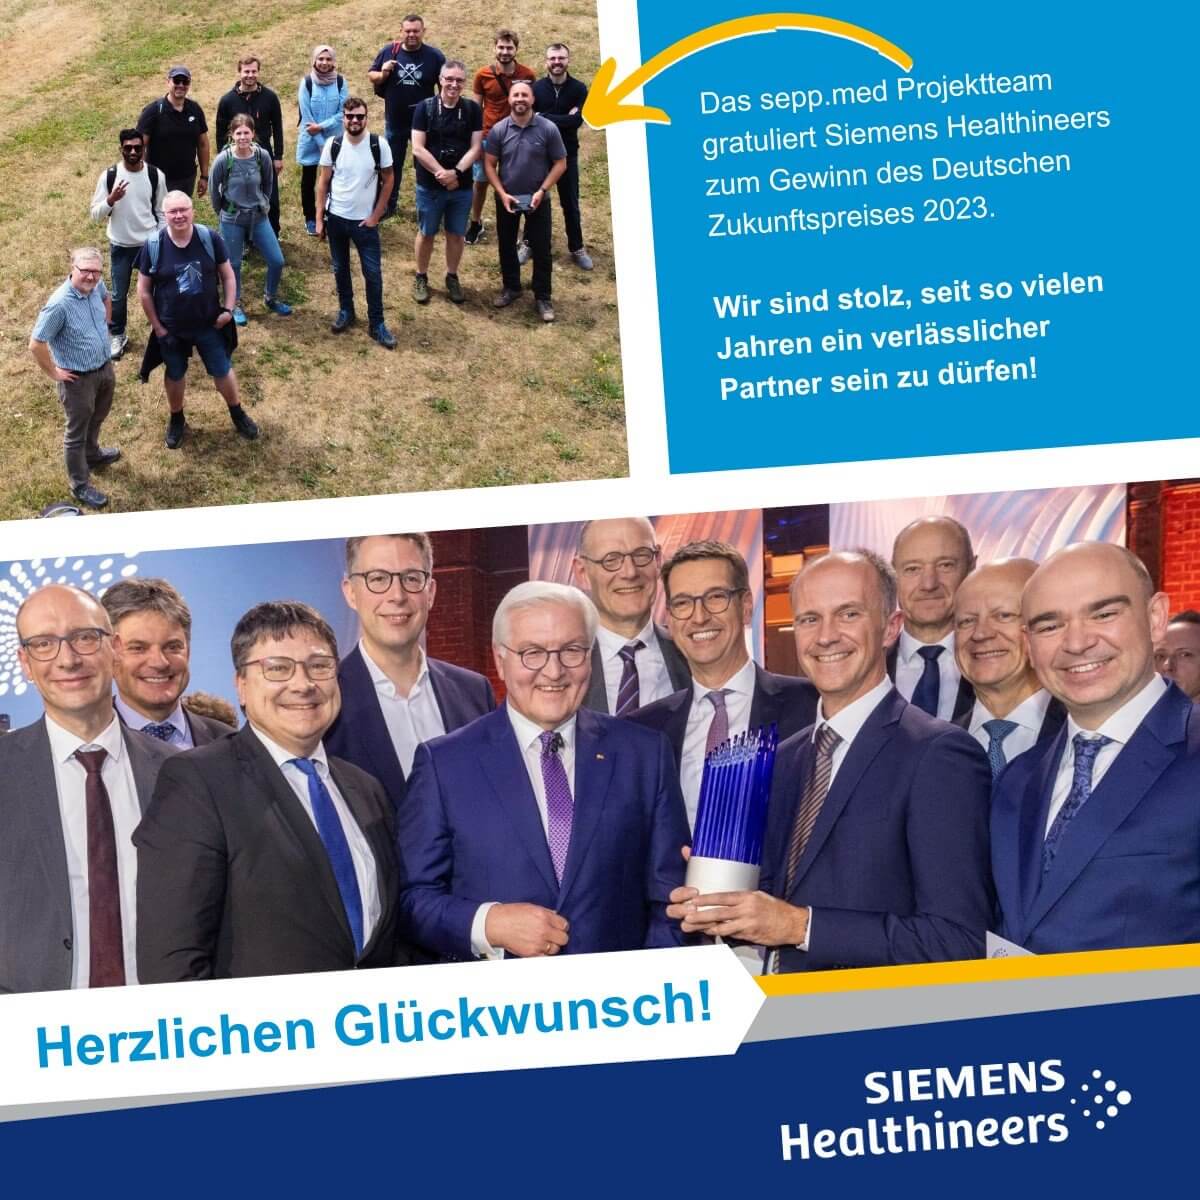 sepp.med gratuliert Siemens Healthineers zum Gewinn des Deutschen Zukunftspreises 2023